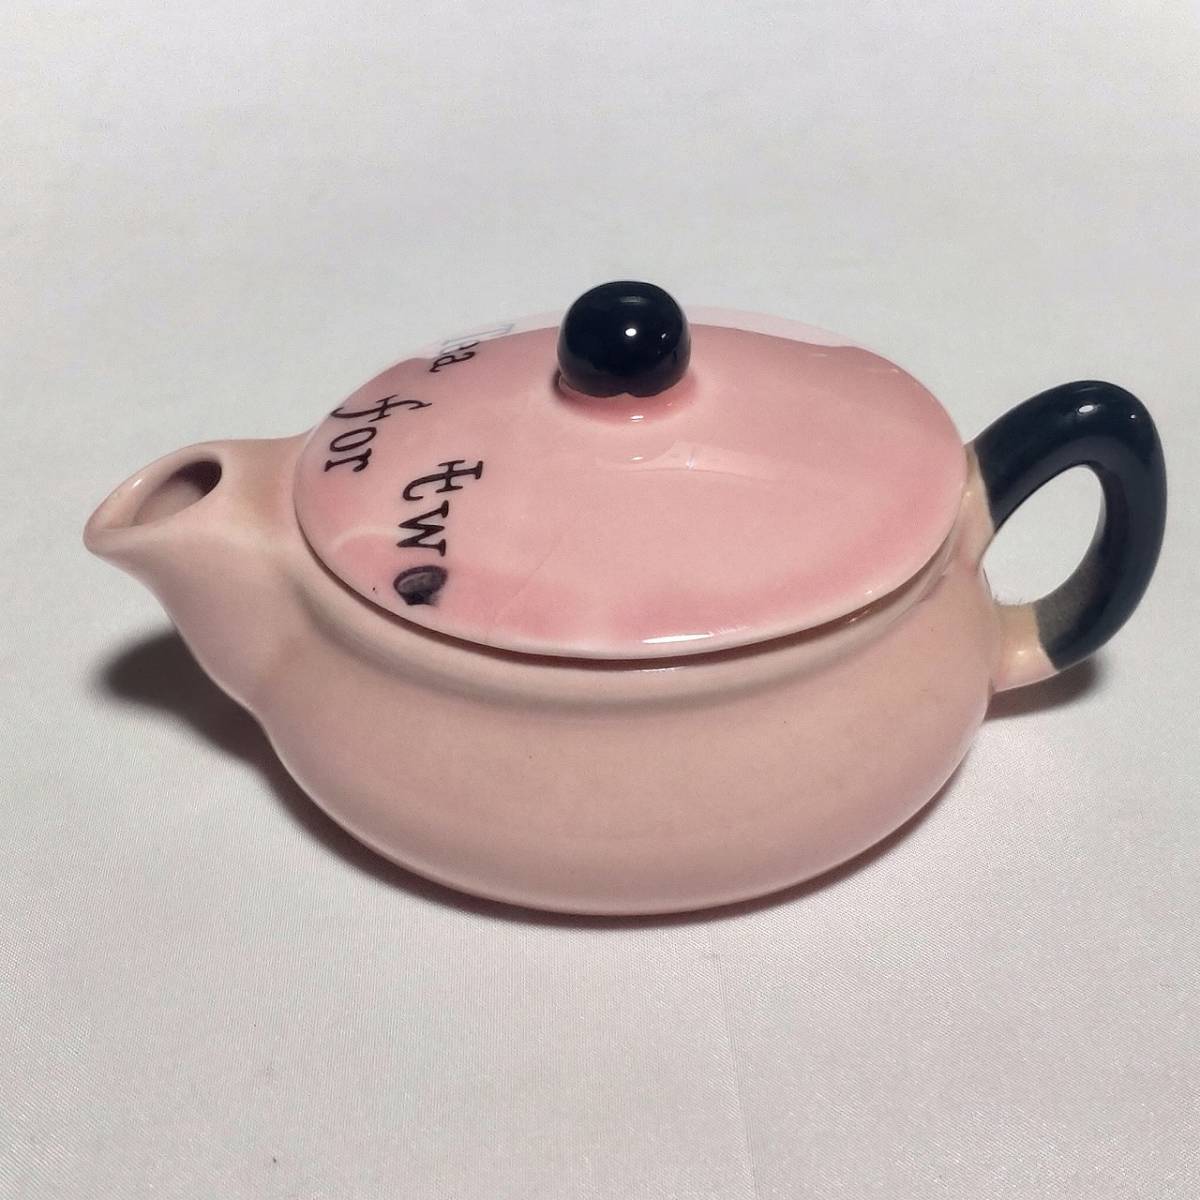 ティ―ポット 小型 陶器 ピンク色 Tea for two 取っ手から注ぎ口まで約11cm 直径約8cm 高さ約5cm 【3954】_画像9